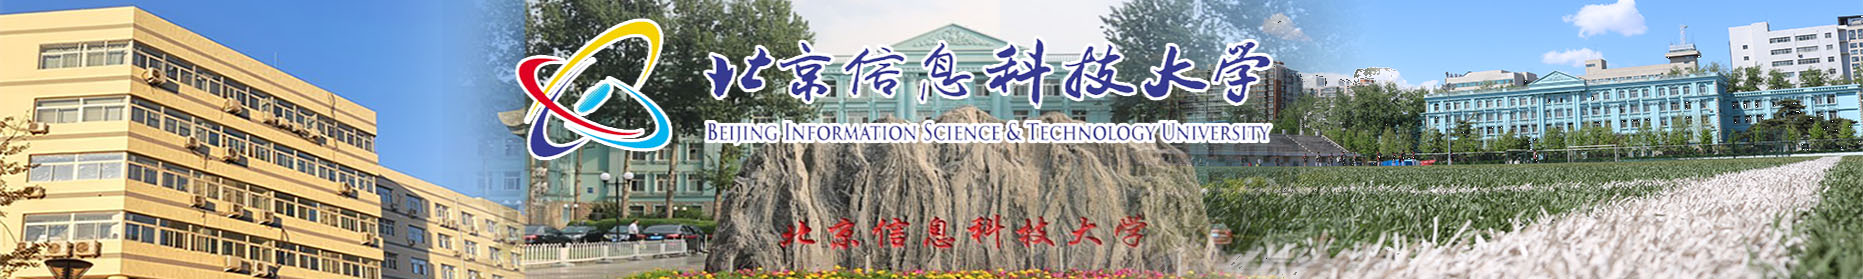 北京信息科技大学2.jpg